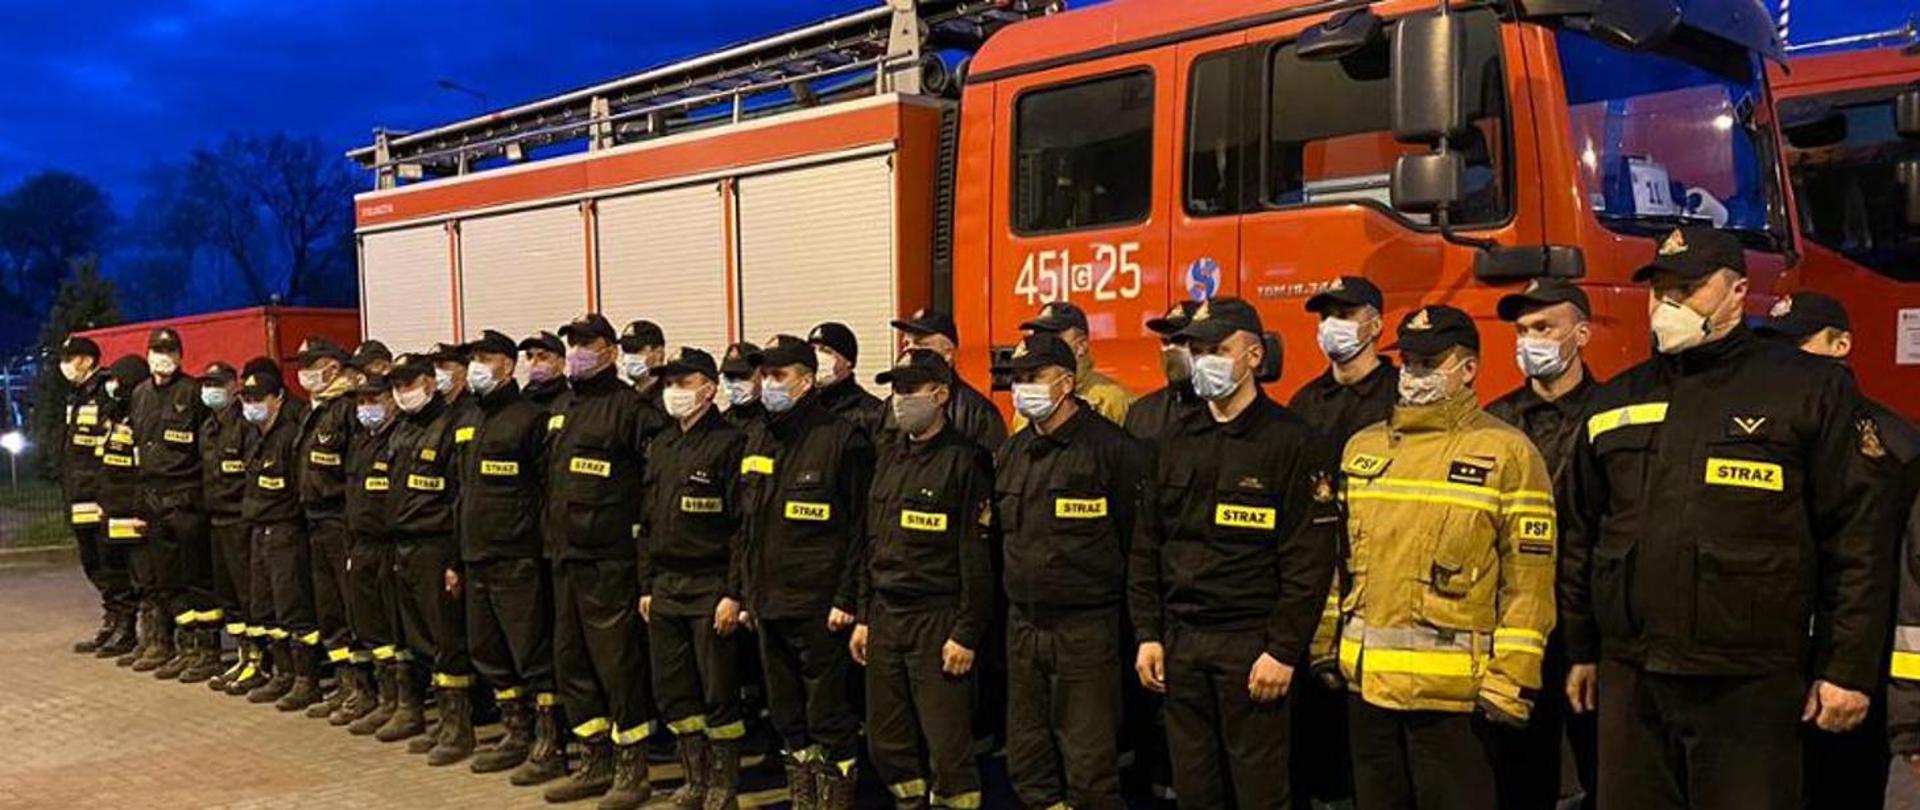 Zdjęcie przedstawia grupę strażaków w mundurach, stojących w dwuszeregu na tle samochodu pożarniczego